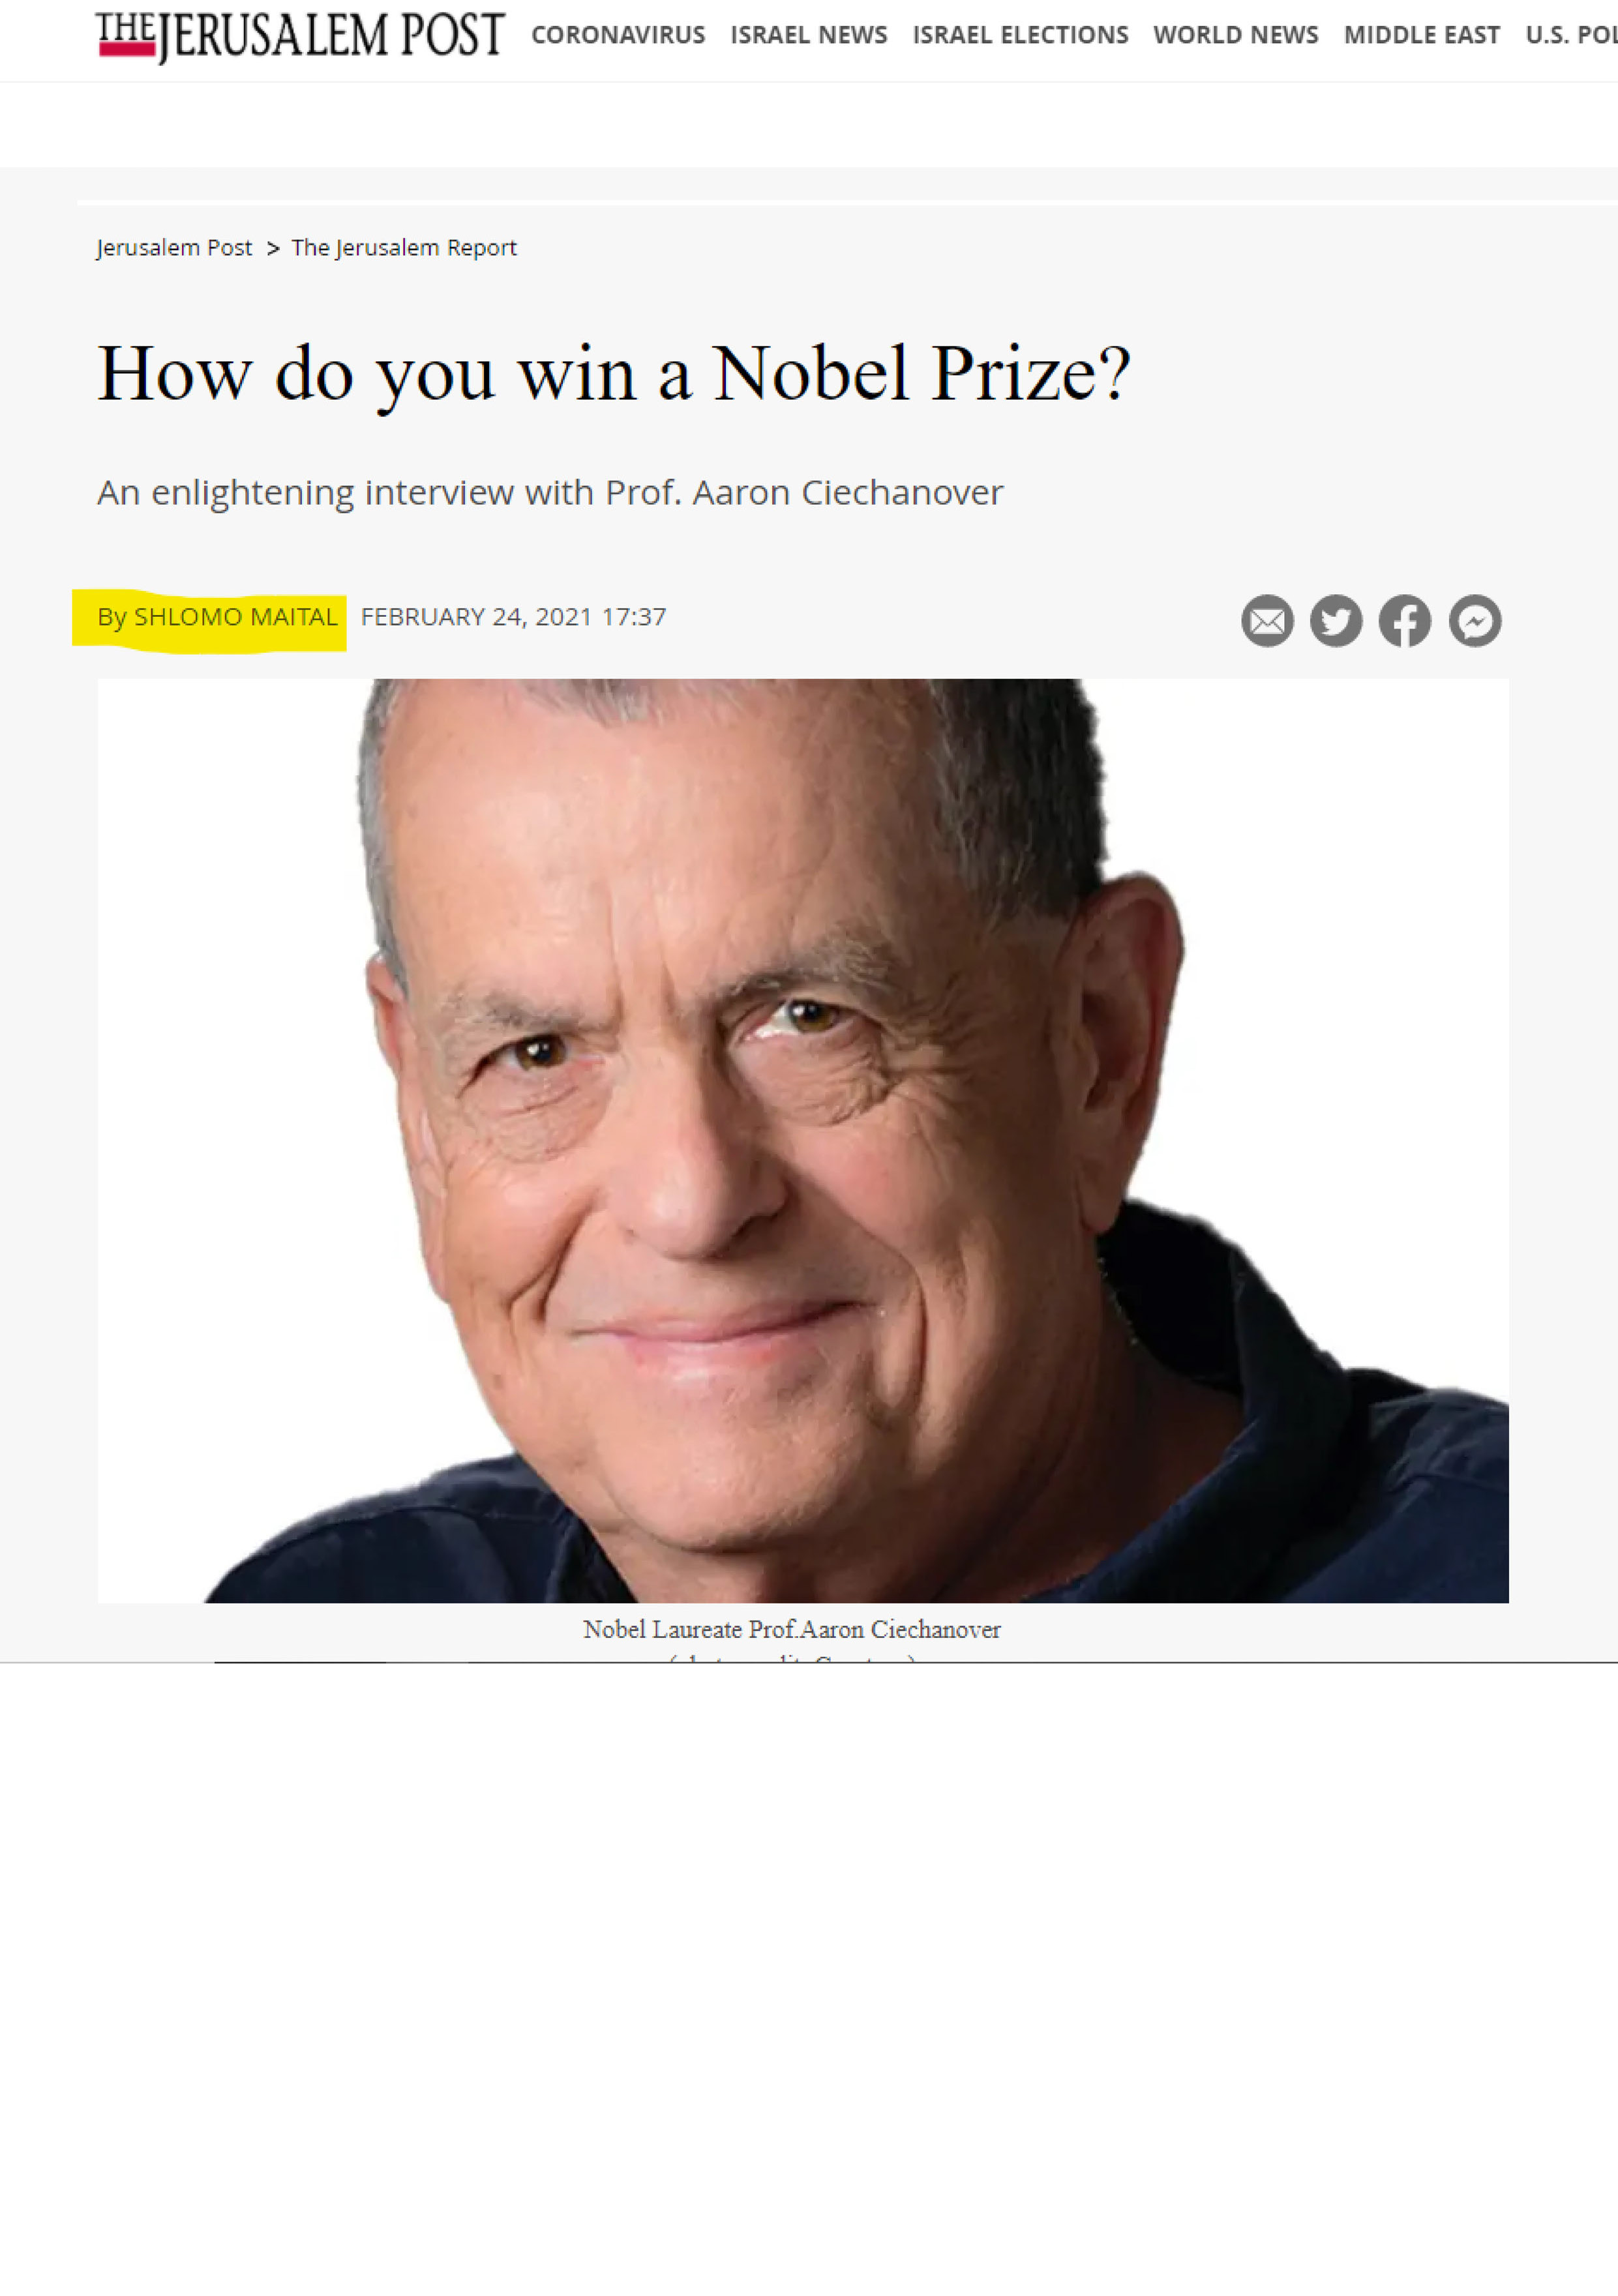 איך לזכות בפרס נובל